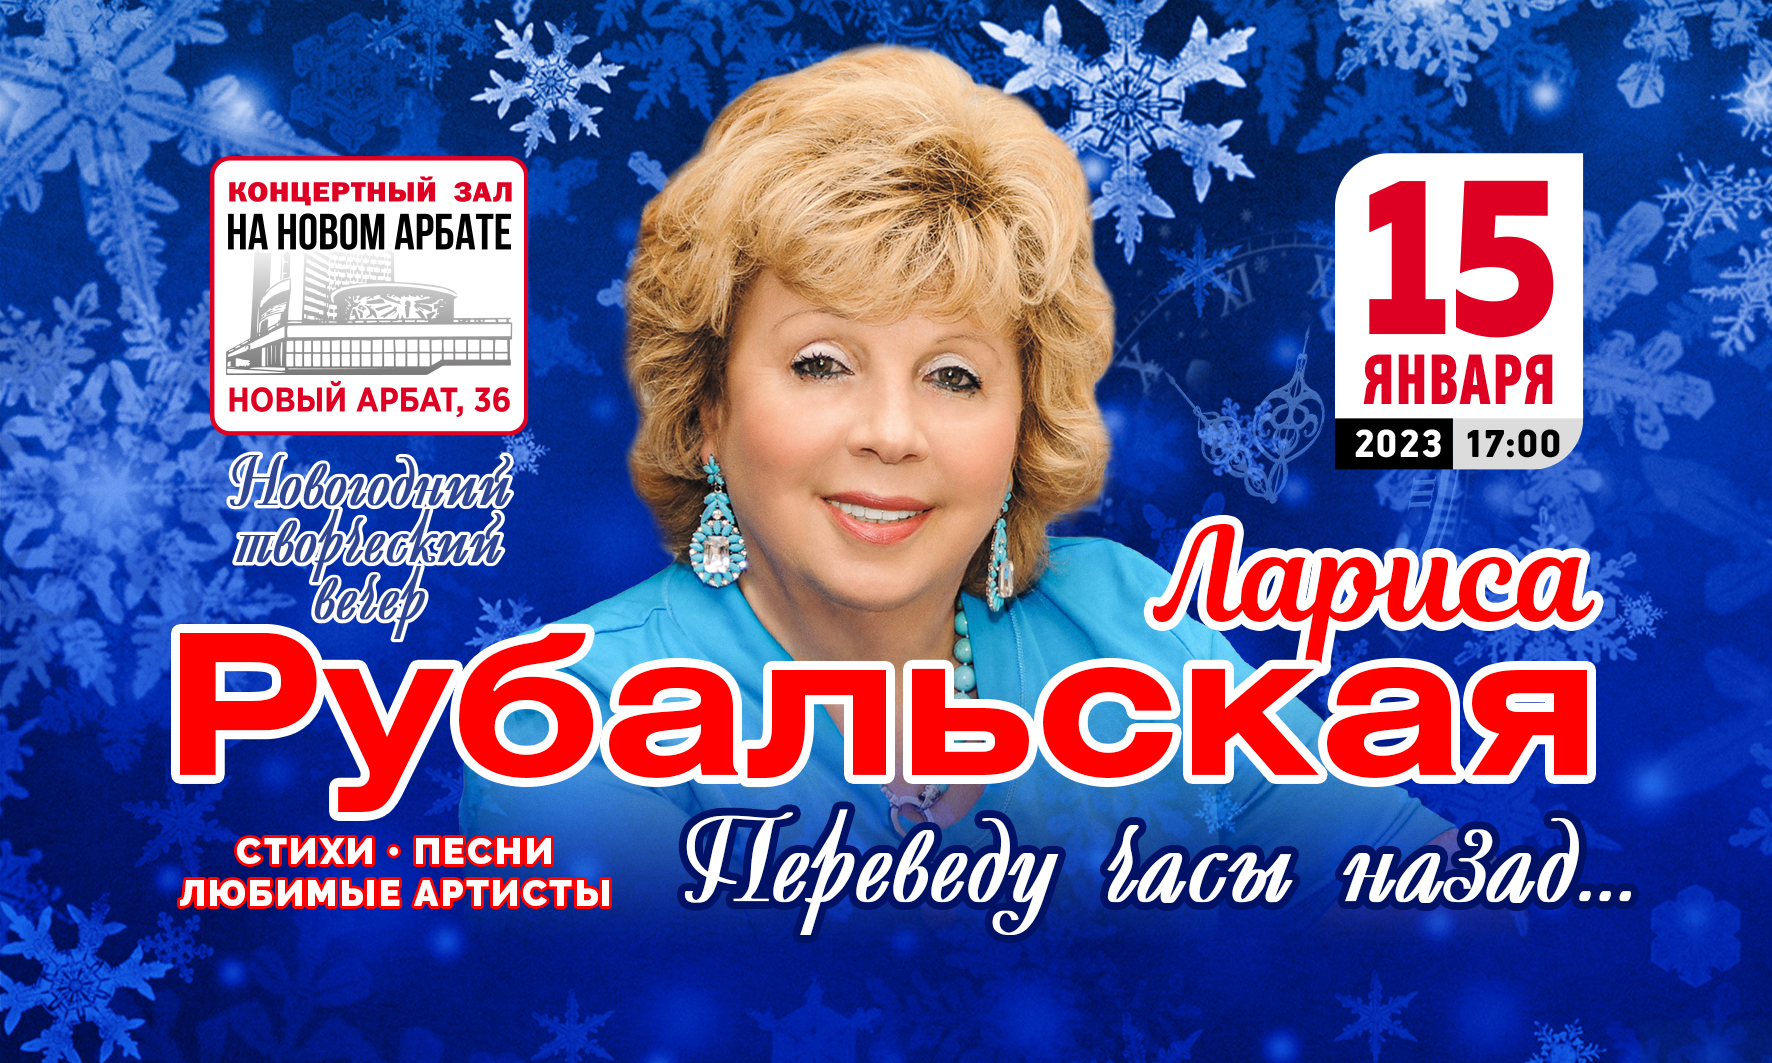 Концерт рубальской билеты. Концерт Ларисы Рубальской в Москве.